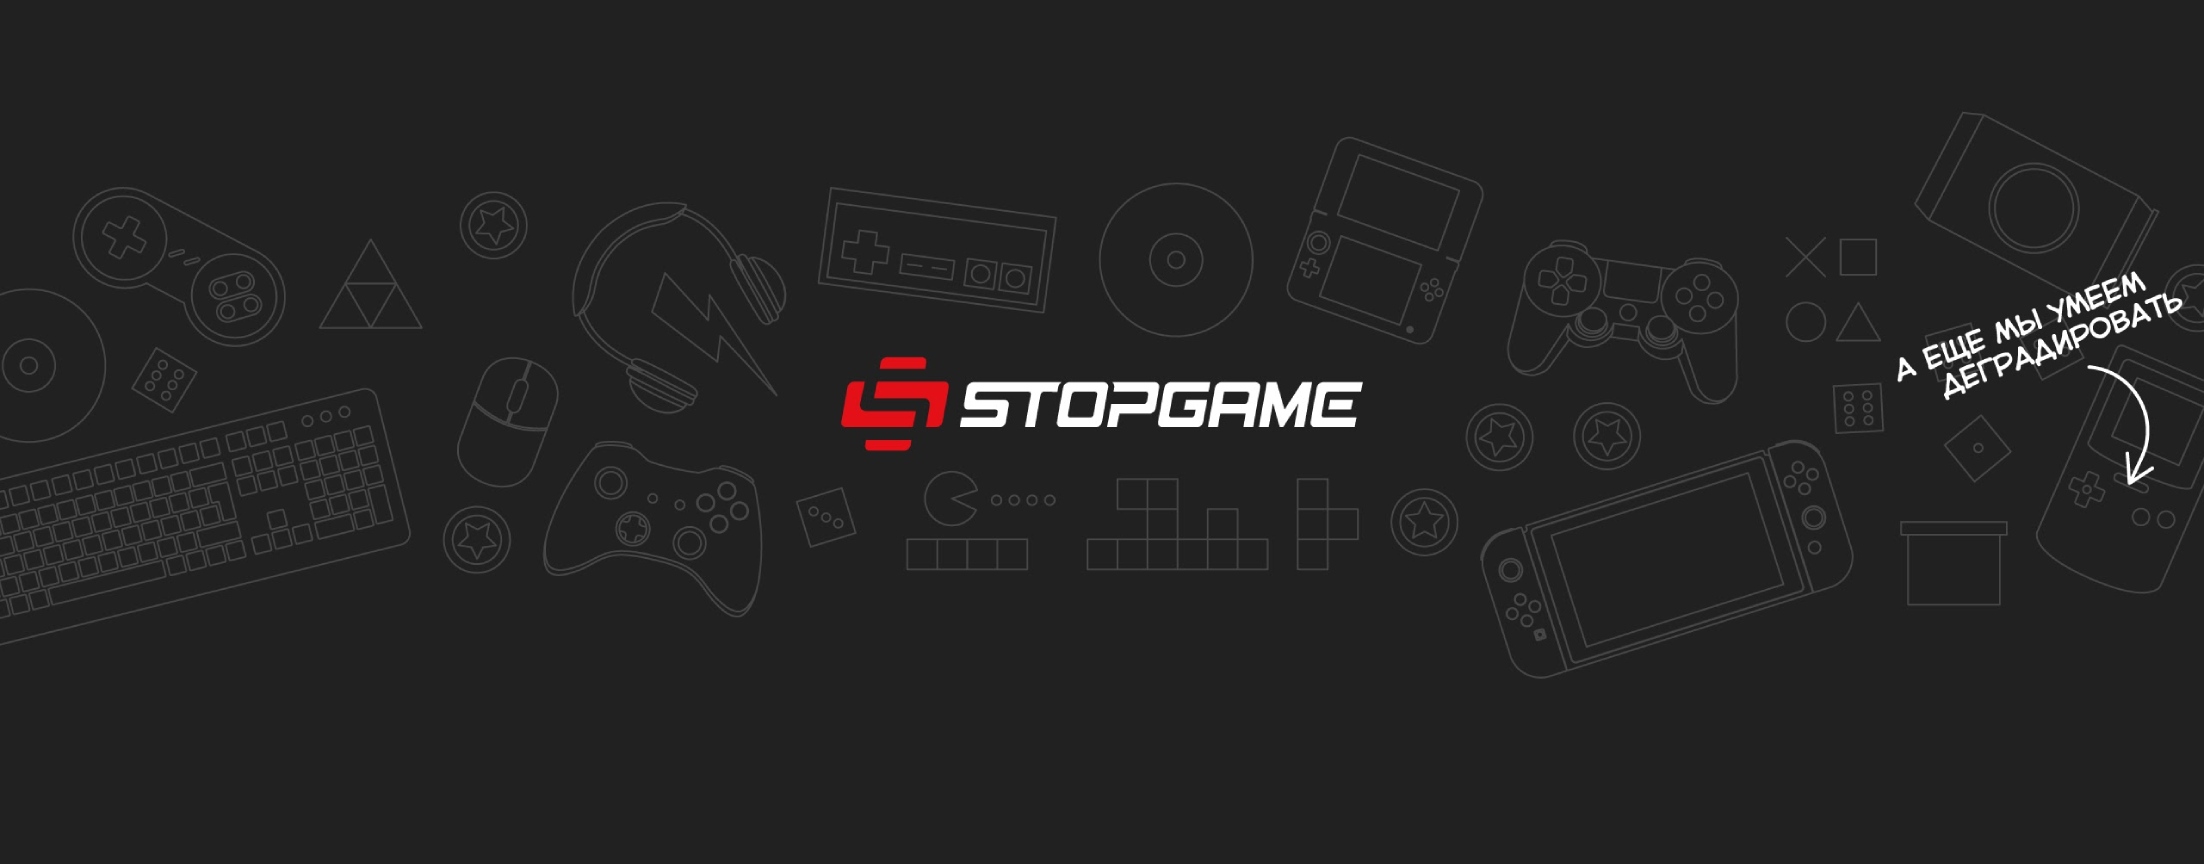 StopGame - Все об играх!